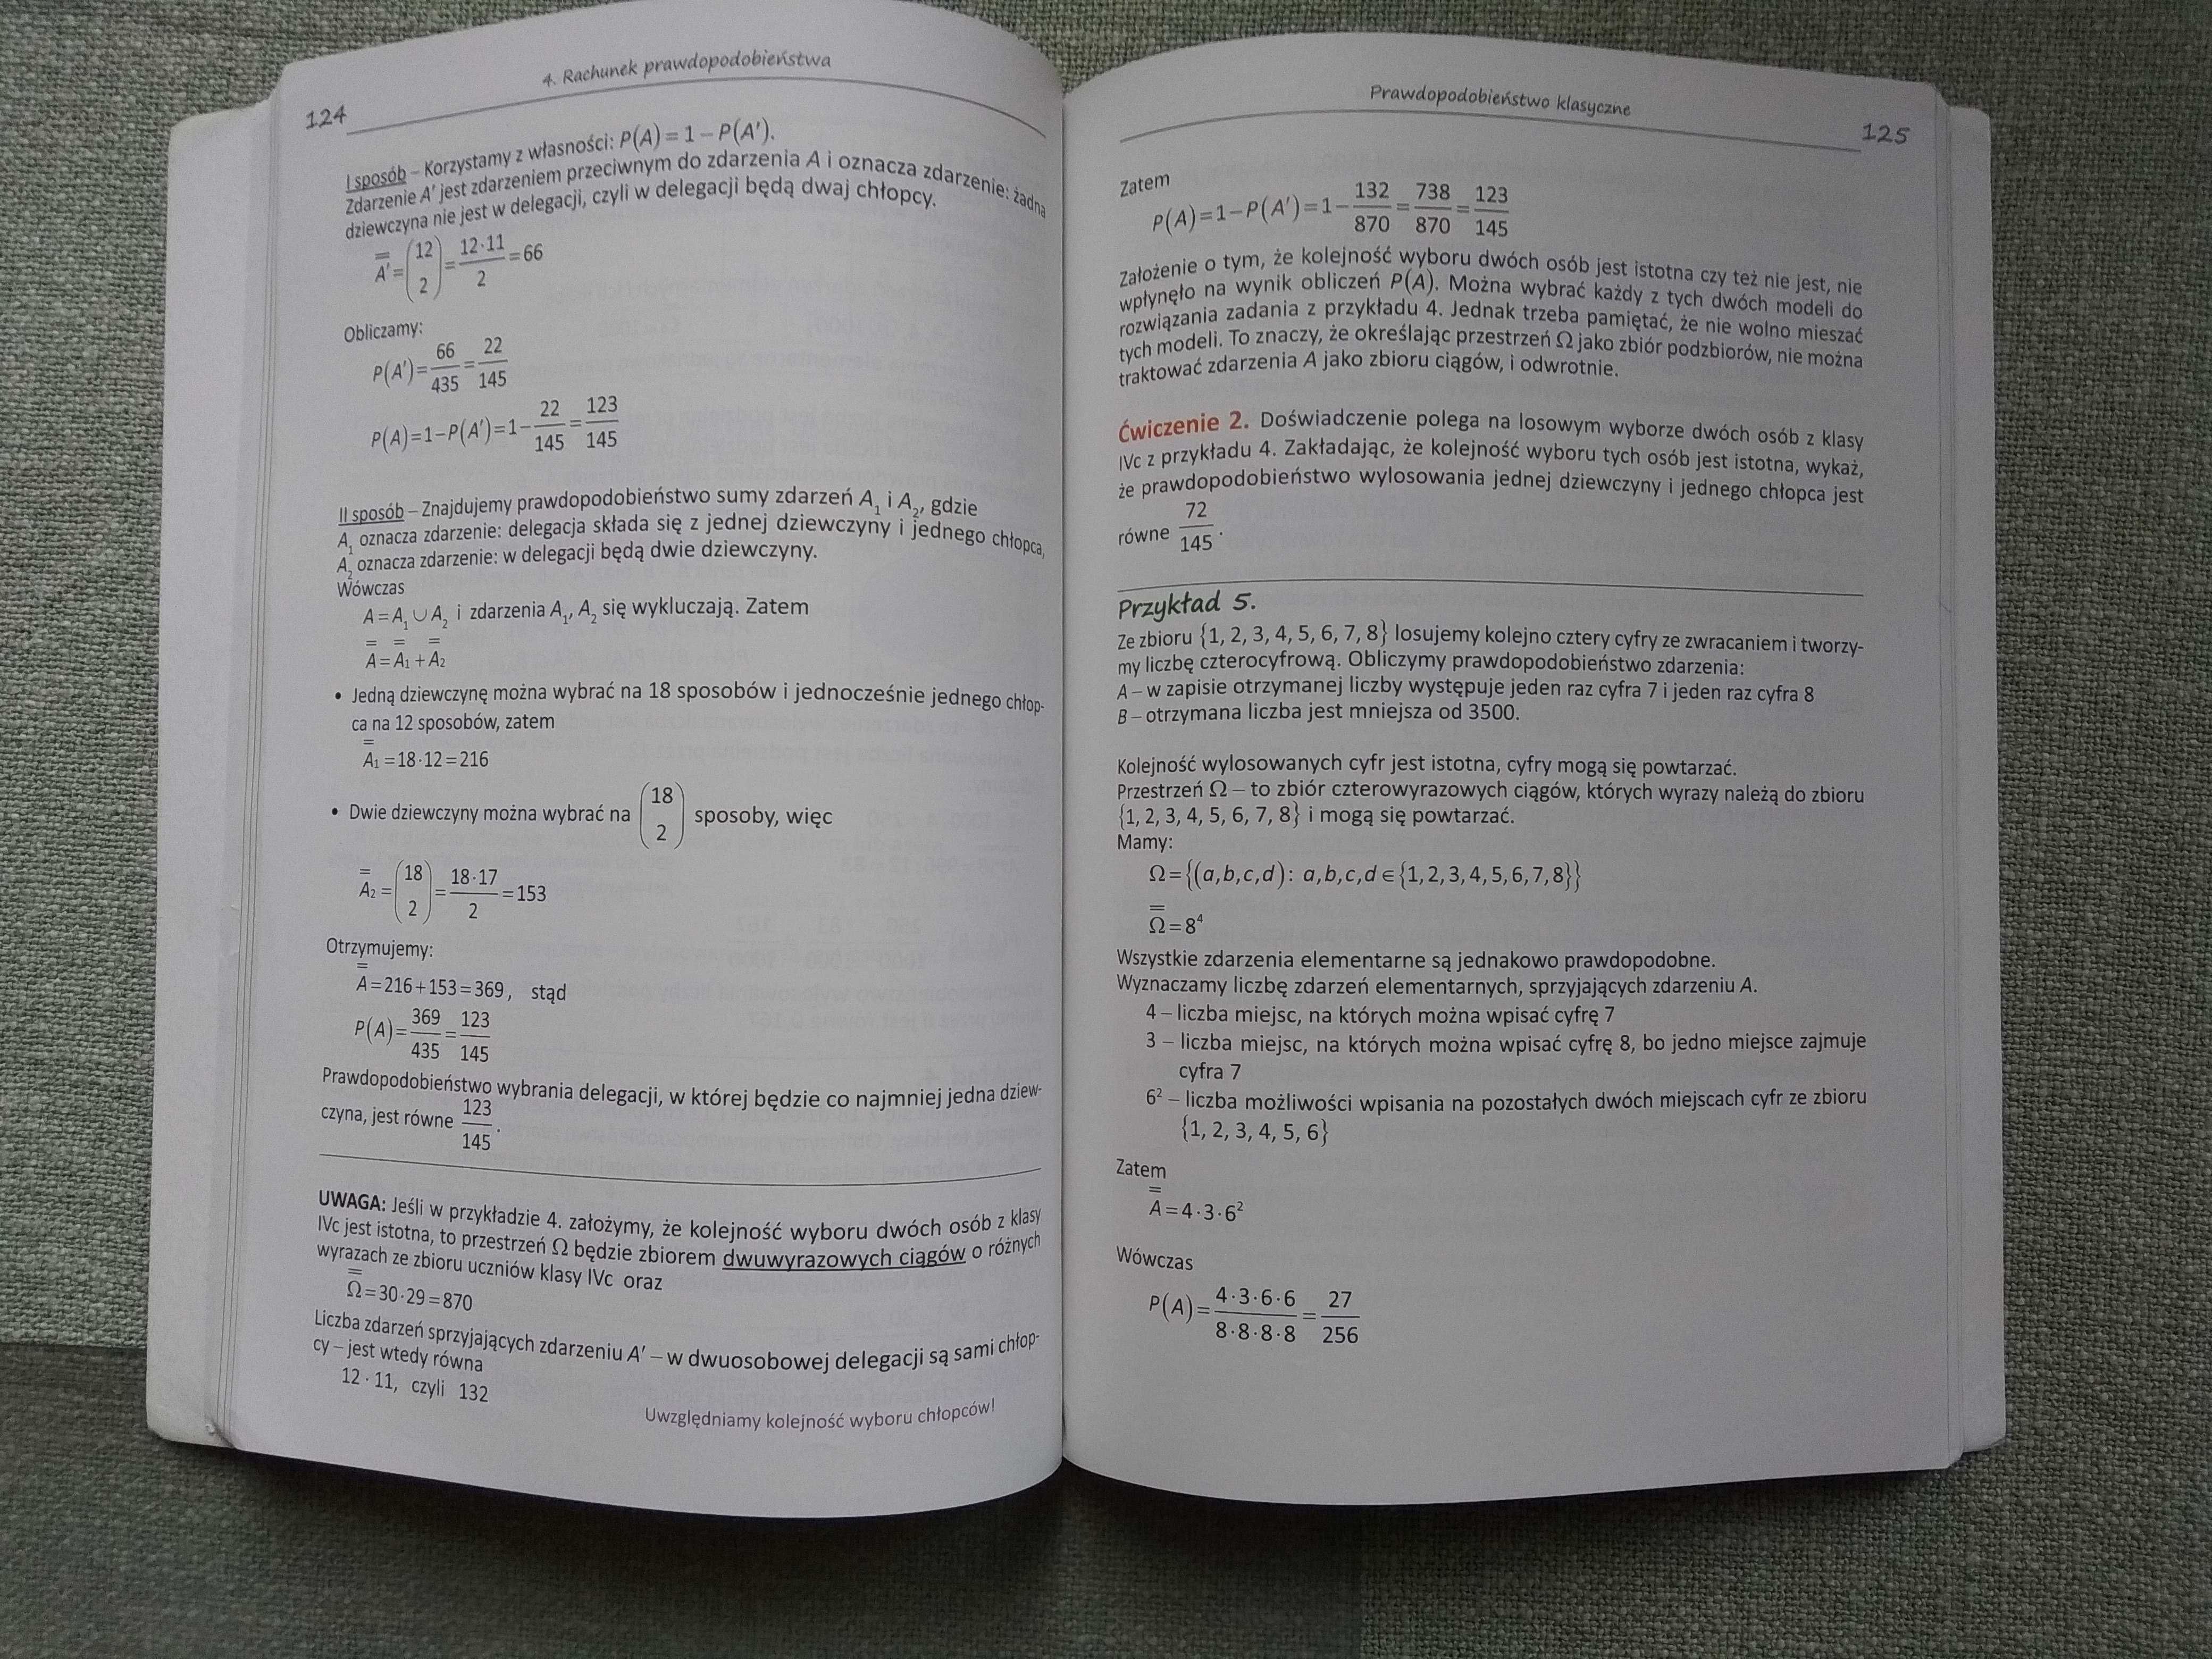 Matematyka 4 Podręcznik zakres podstawowy jak nowy + kod e-podręcznik